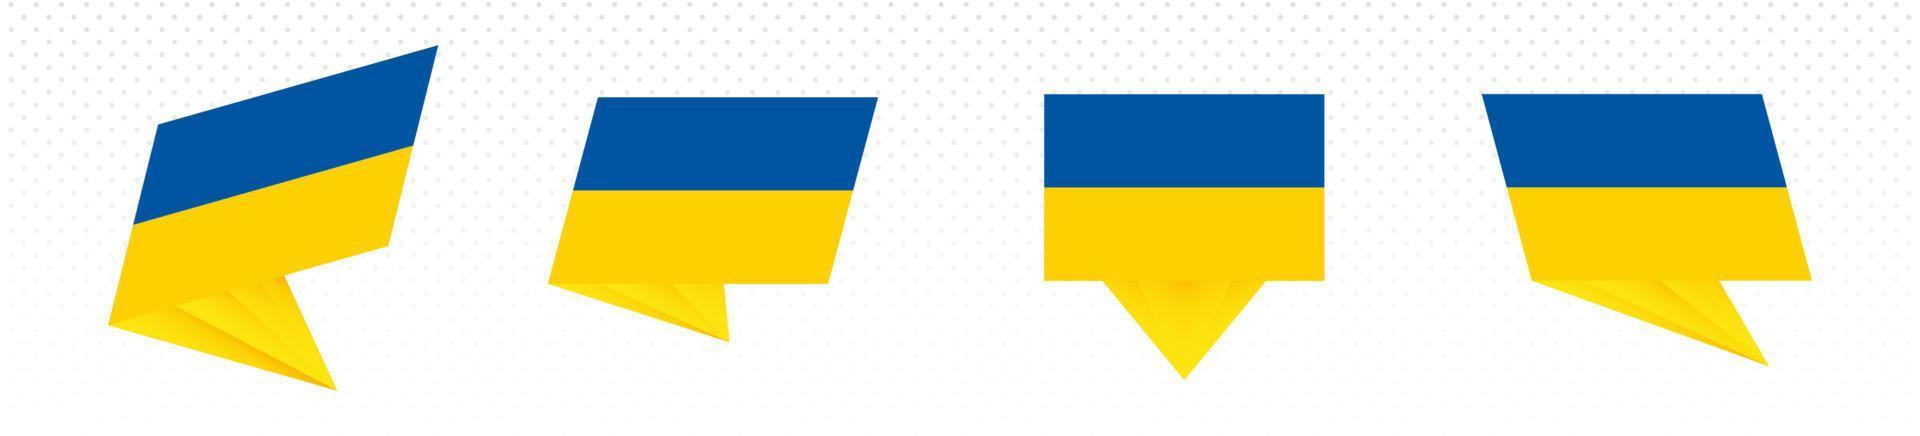 bandeira da ucrânia em design abstrato moderno, conjunto de bandeiras. vetor